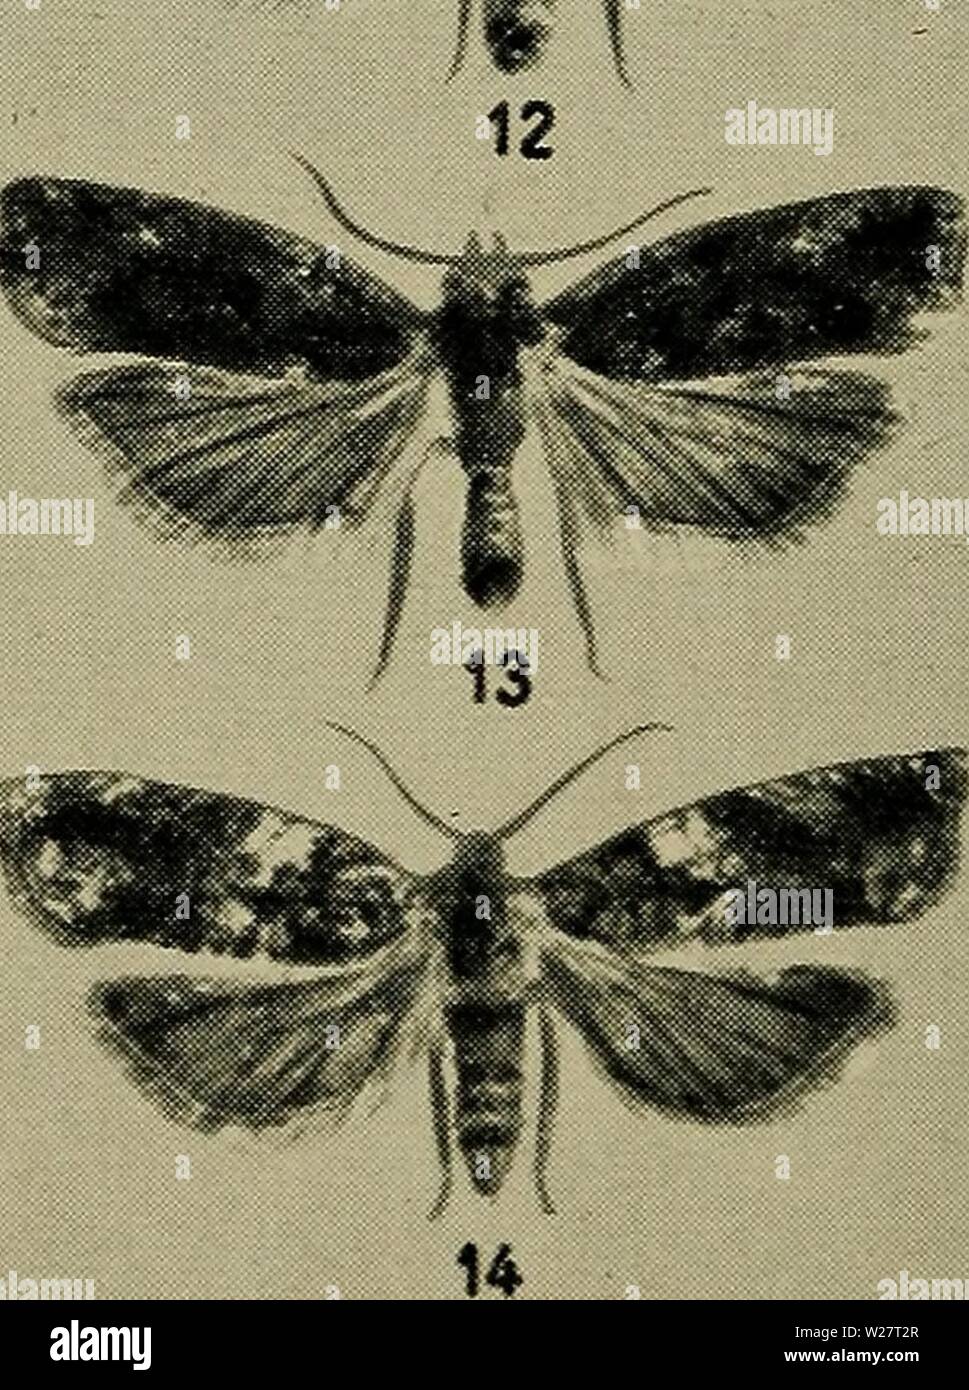 Archive image from page 313 of Danmarks fauna; illustrerede haandbøger over. Danmarks fauna; illustrerede haandbøger over den danske dyreverden..  danmarksfaunaill61dans Year: 1907  iff.'w    1. Semasia cruciana, 2. S. vacciniana, 3. S. gimmerthaliana, 4. S. simplana, 5. S. rubiginosana, 6. S. ramella, 7. do. ab. costana, 8. S. quadrana, 9. S. diniana, 10. S. rufimitrana, 11. S. ratzeburgiana, 12 og 13, S. stroemiana, 14. S. trimaculana. Stock Photo